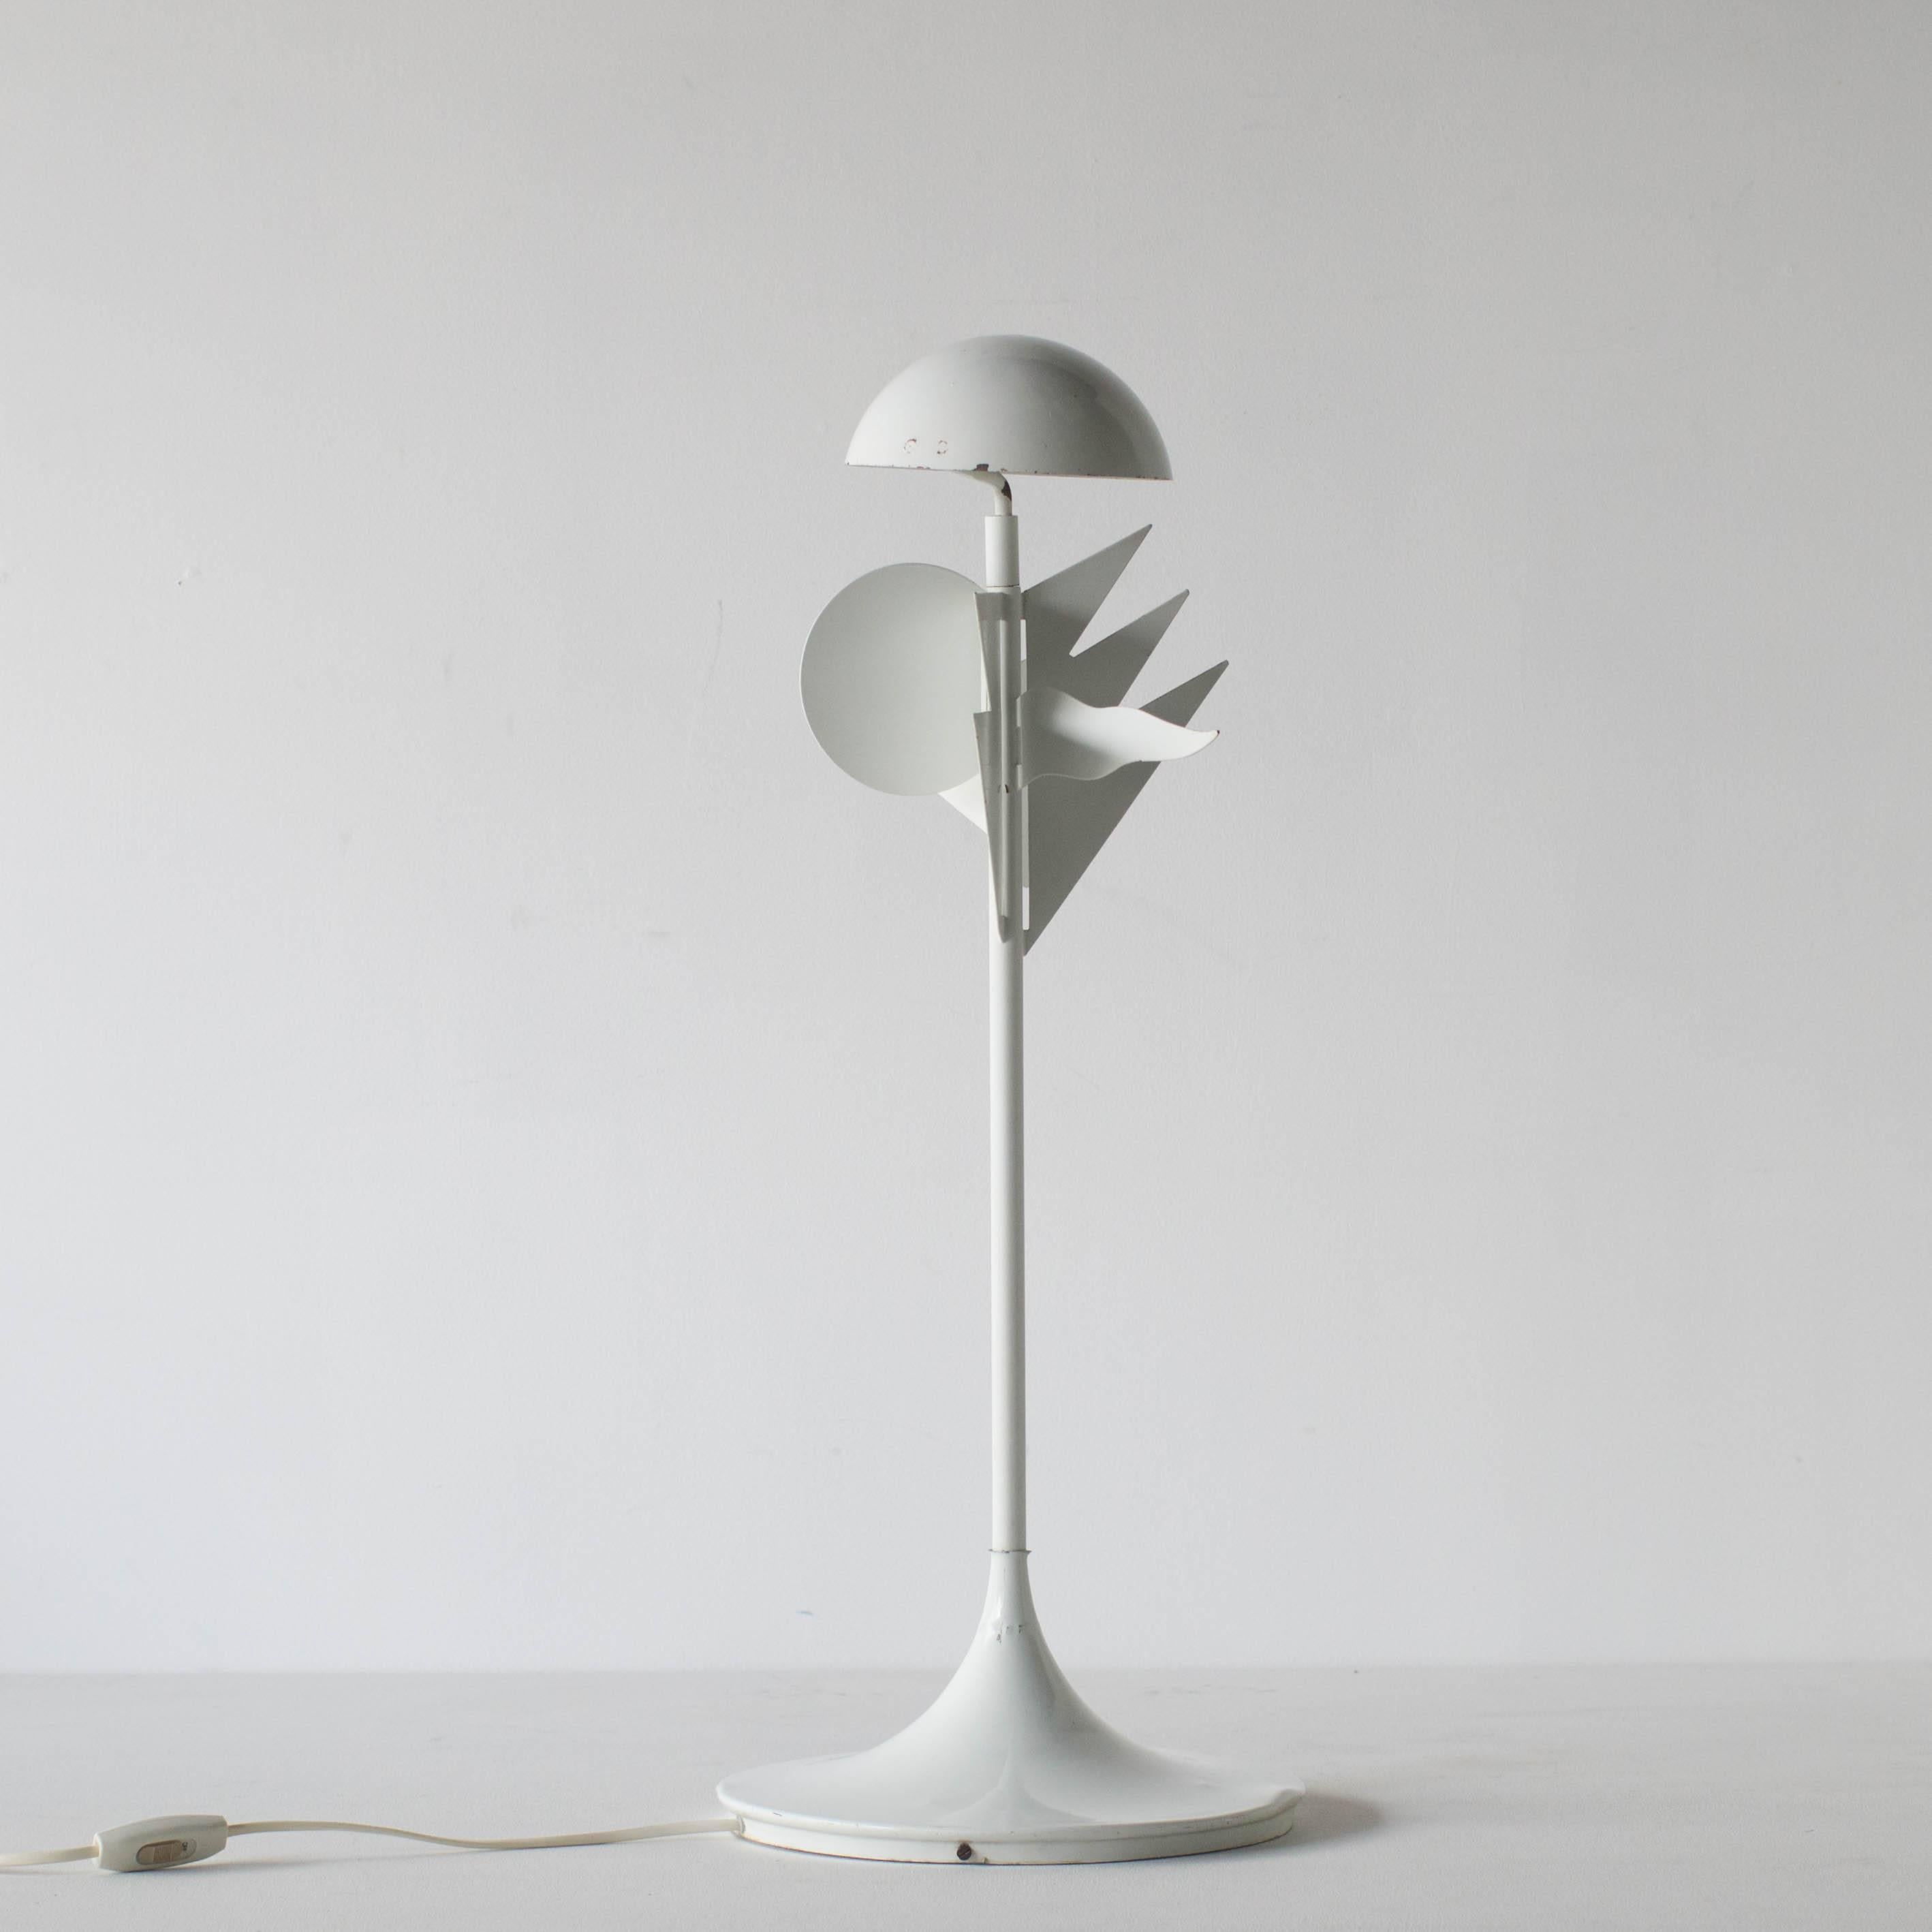 Papalina Tischlampe Alessandro Mendini. Entworfen 1983 für Eleusi. 
Lampe schwer zu finden.